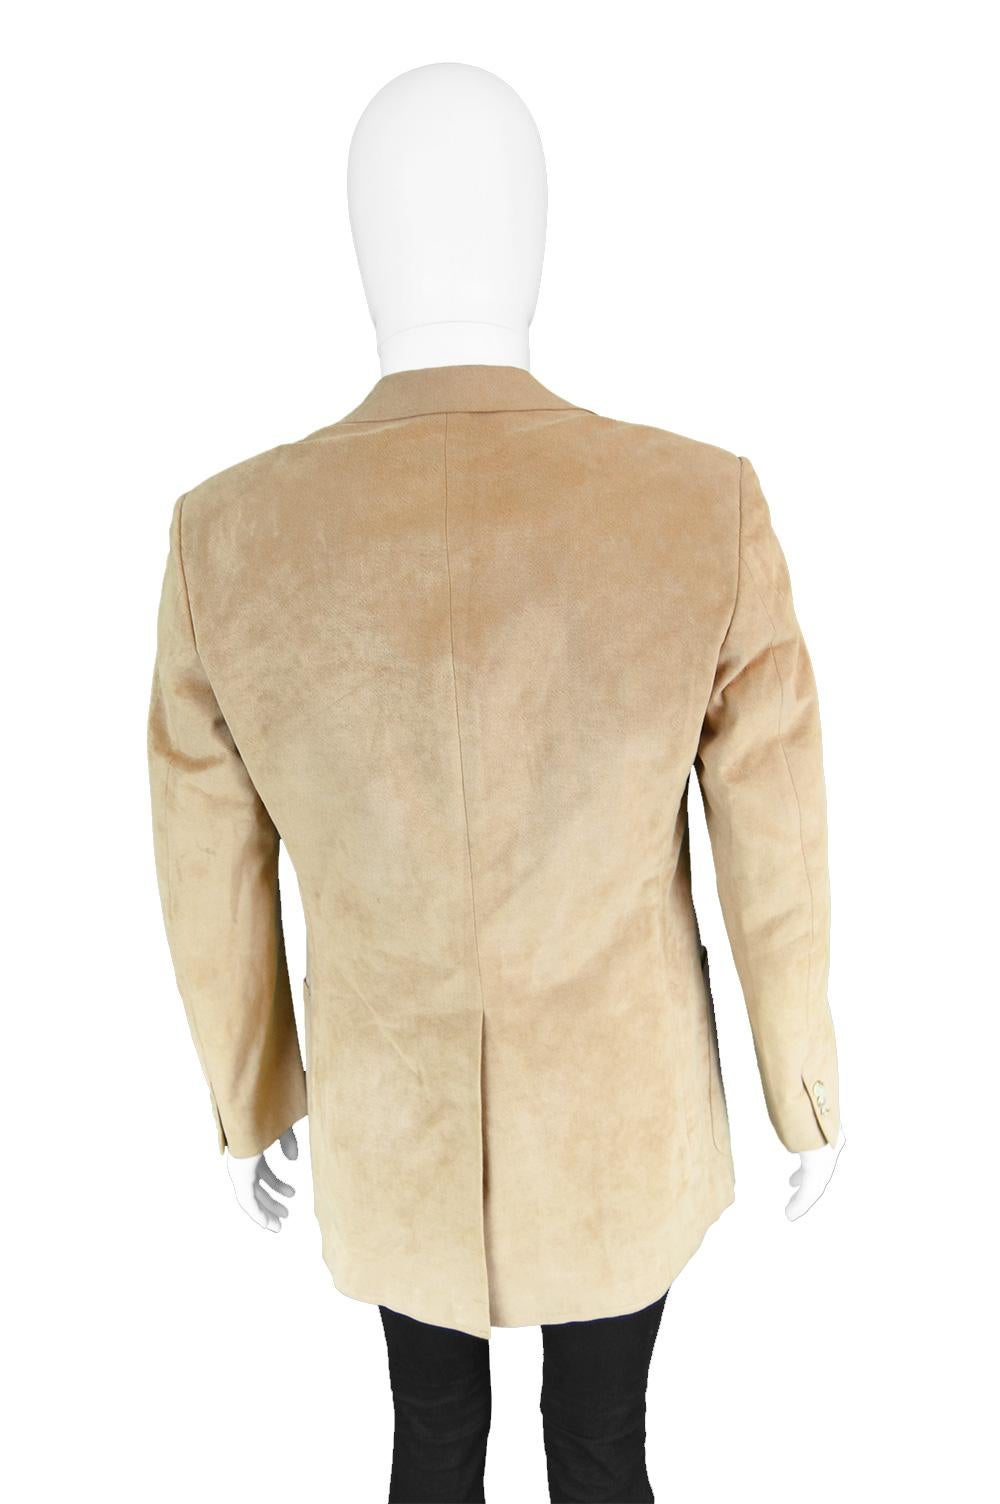 Halston for I. Magnin Men's Vintage 'Halsuede' Brown Blazer Jacket, 1970s 2